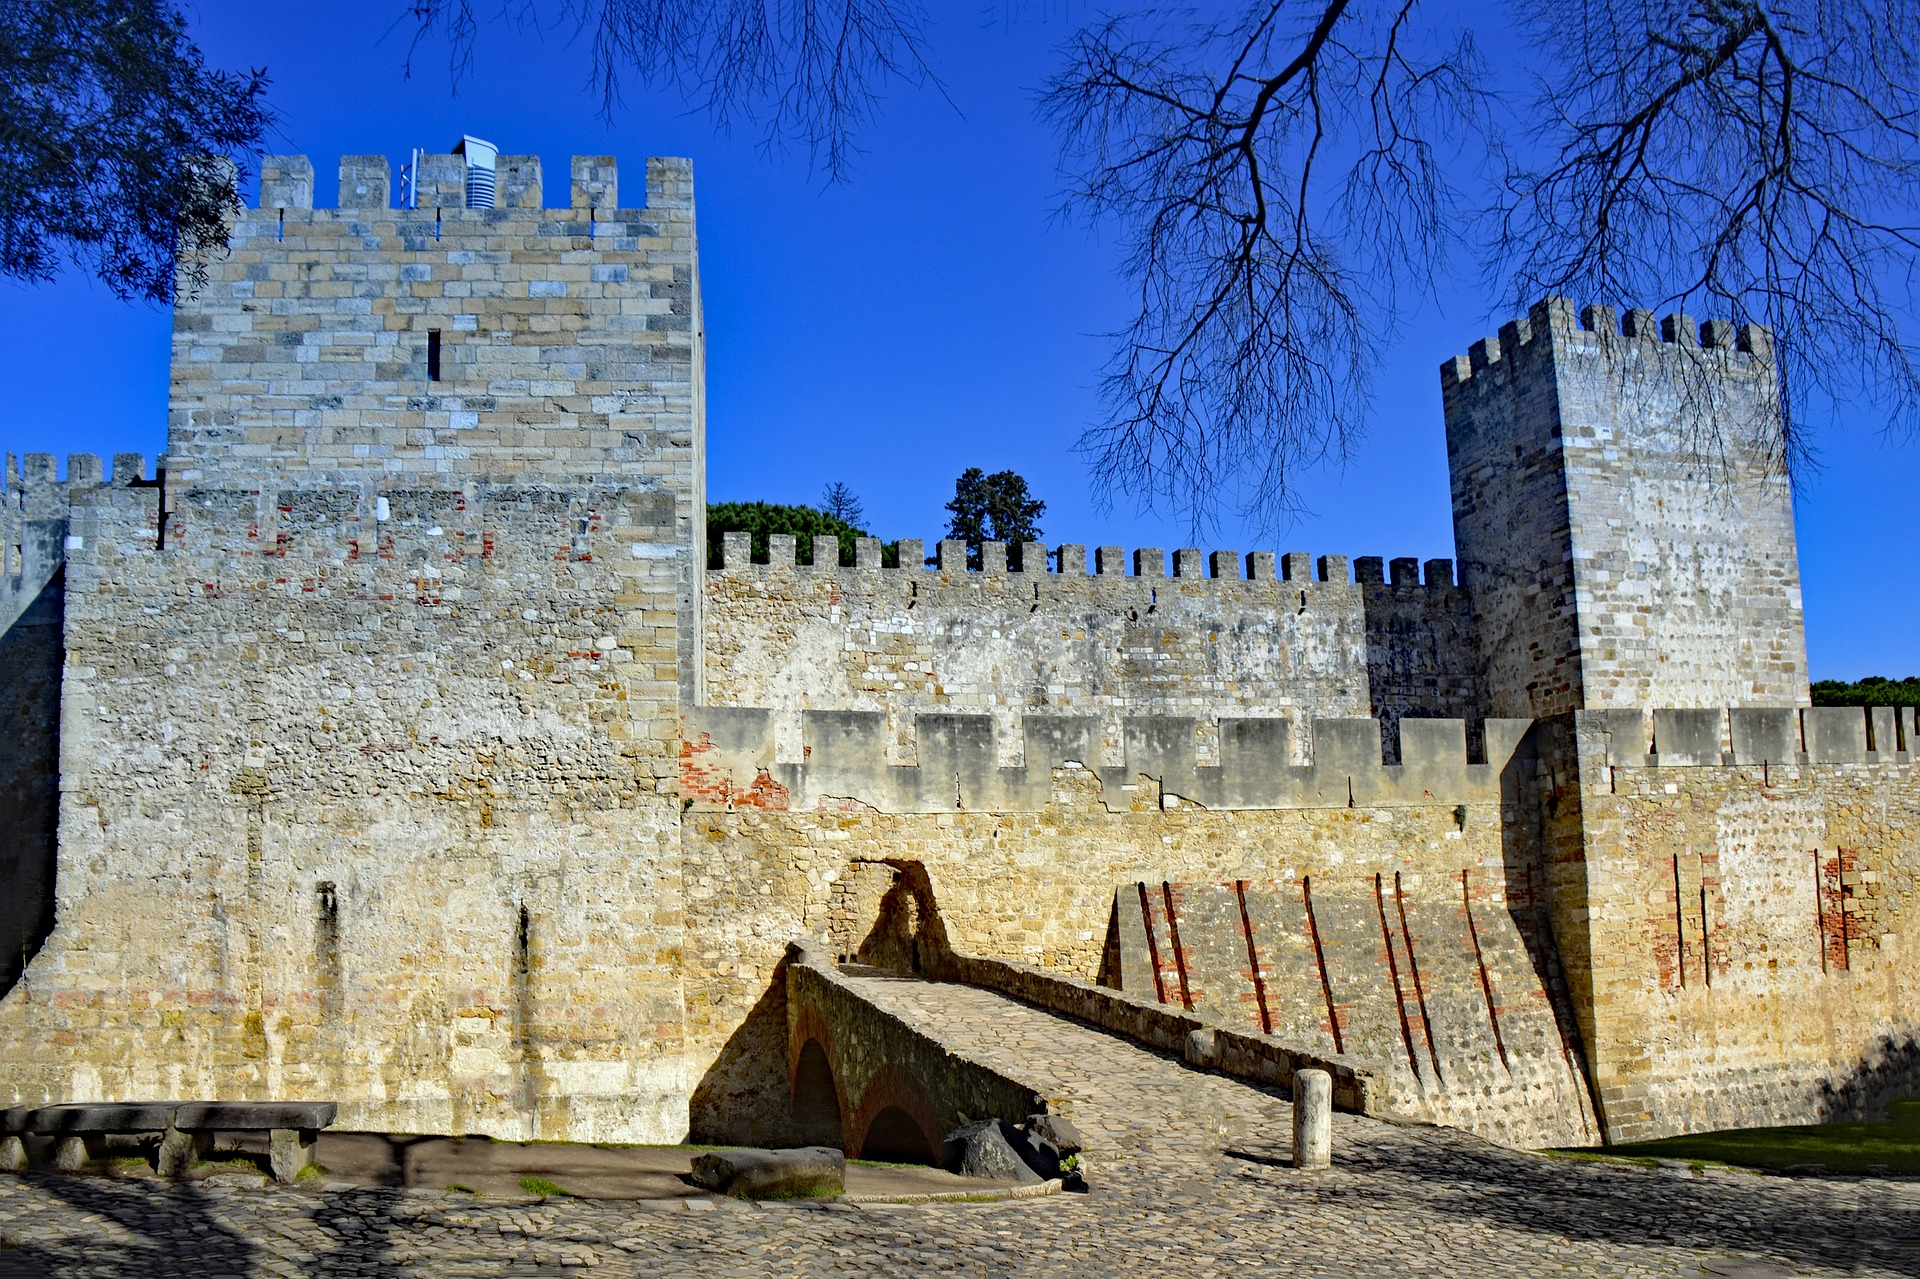 Castelo Sao Jorge, Lisbon